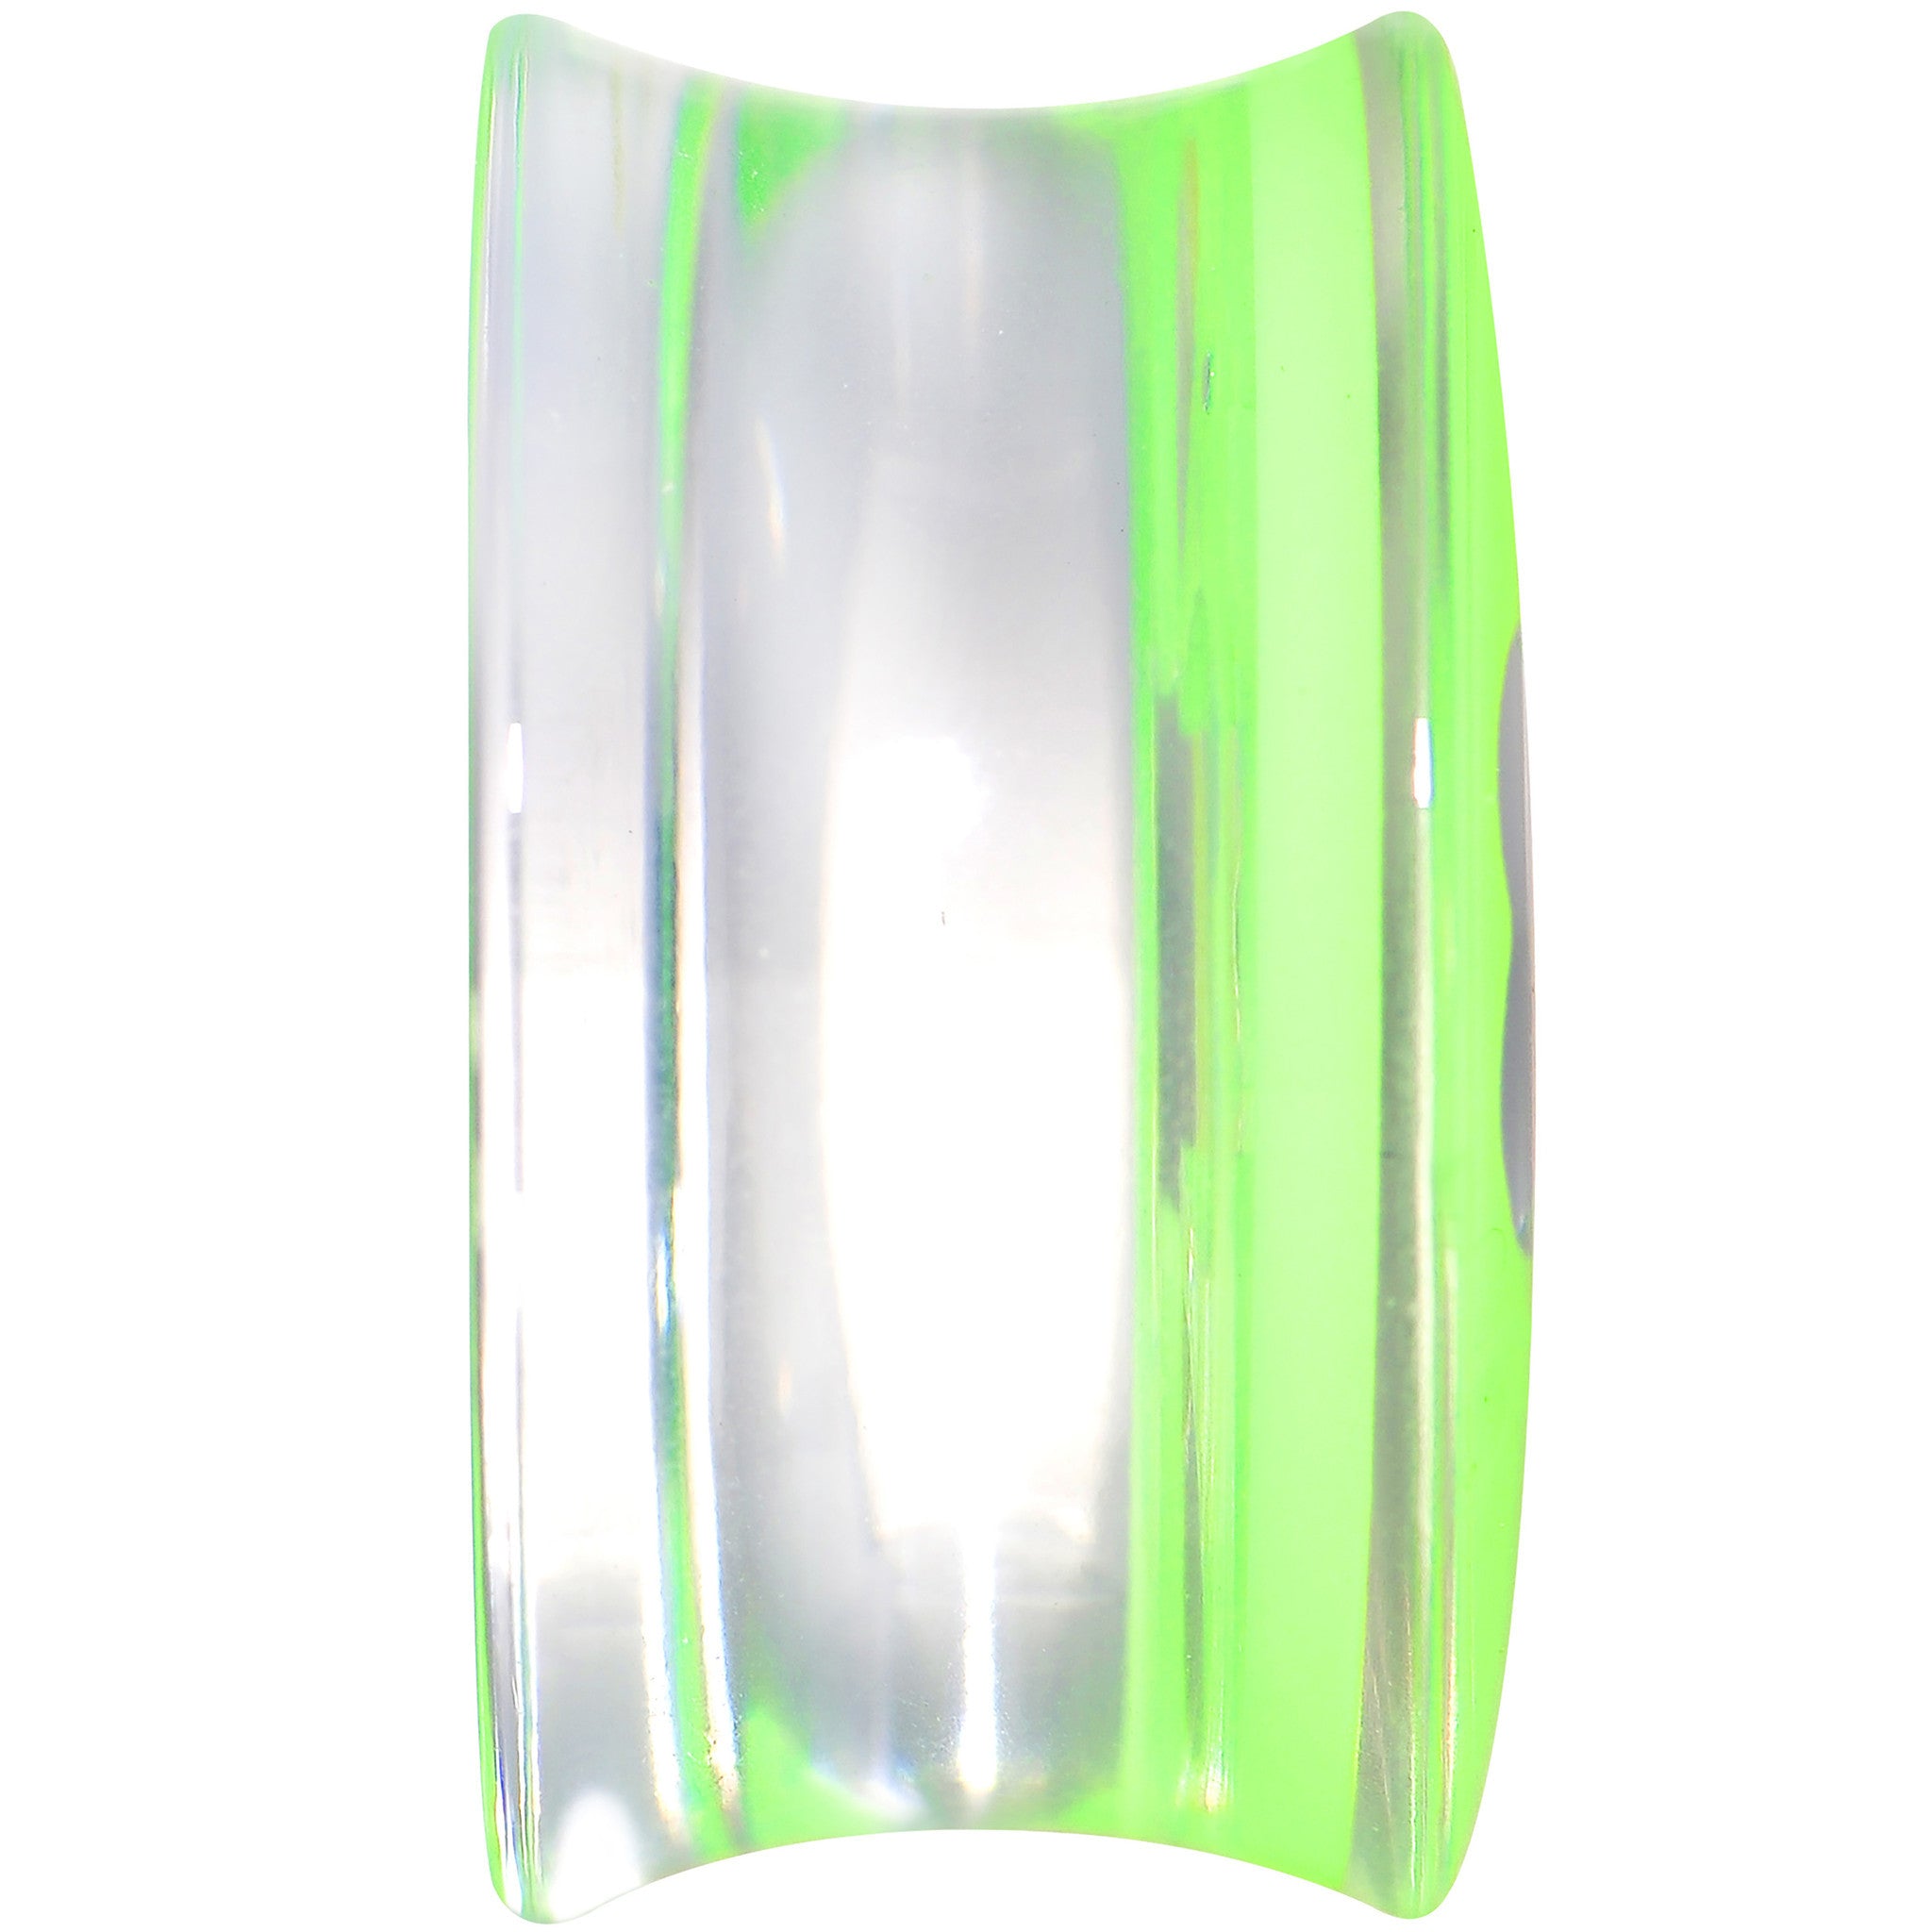 18mm Clear Green Acrylic Lucky Clover Saddle Plug